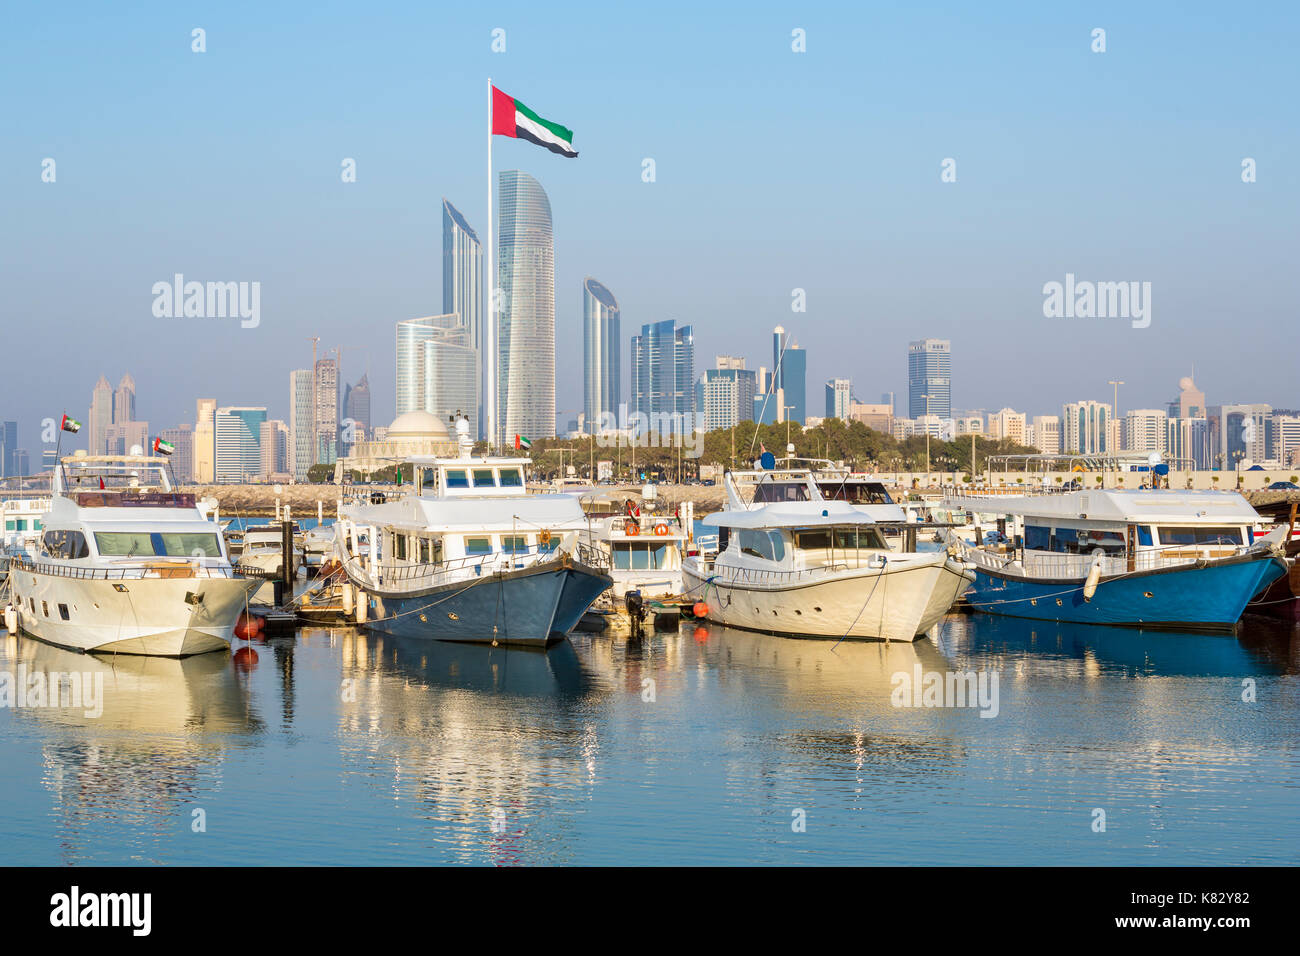 Modern city skyline and Marina, Abu Dhabi, United Arab Emirates, UAE Stock Photo